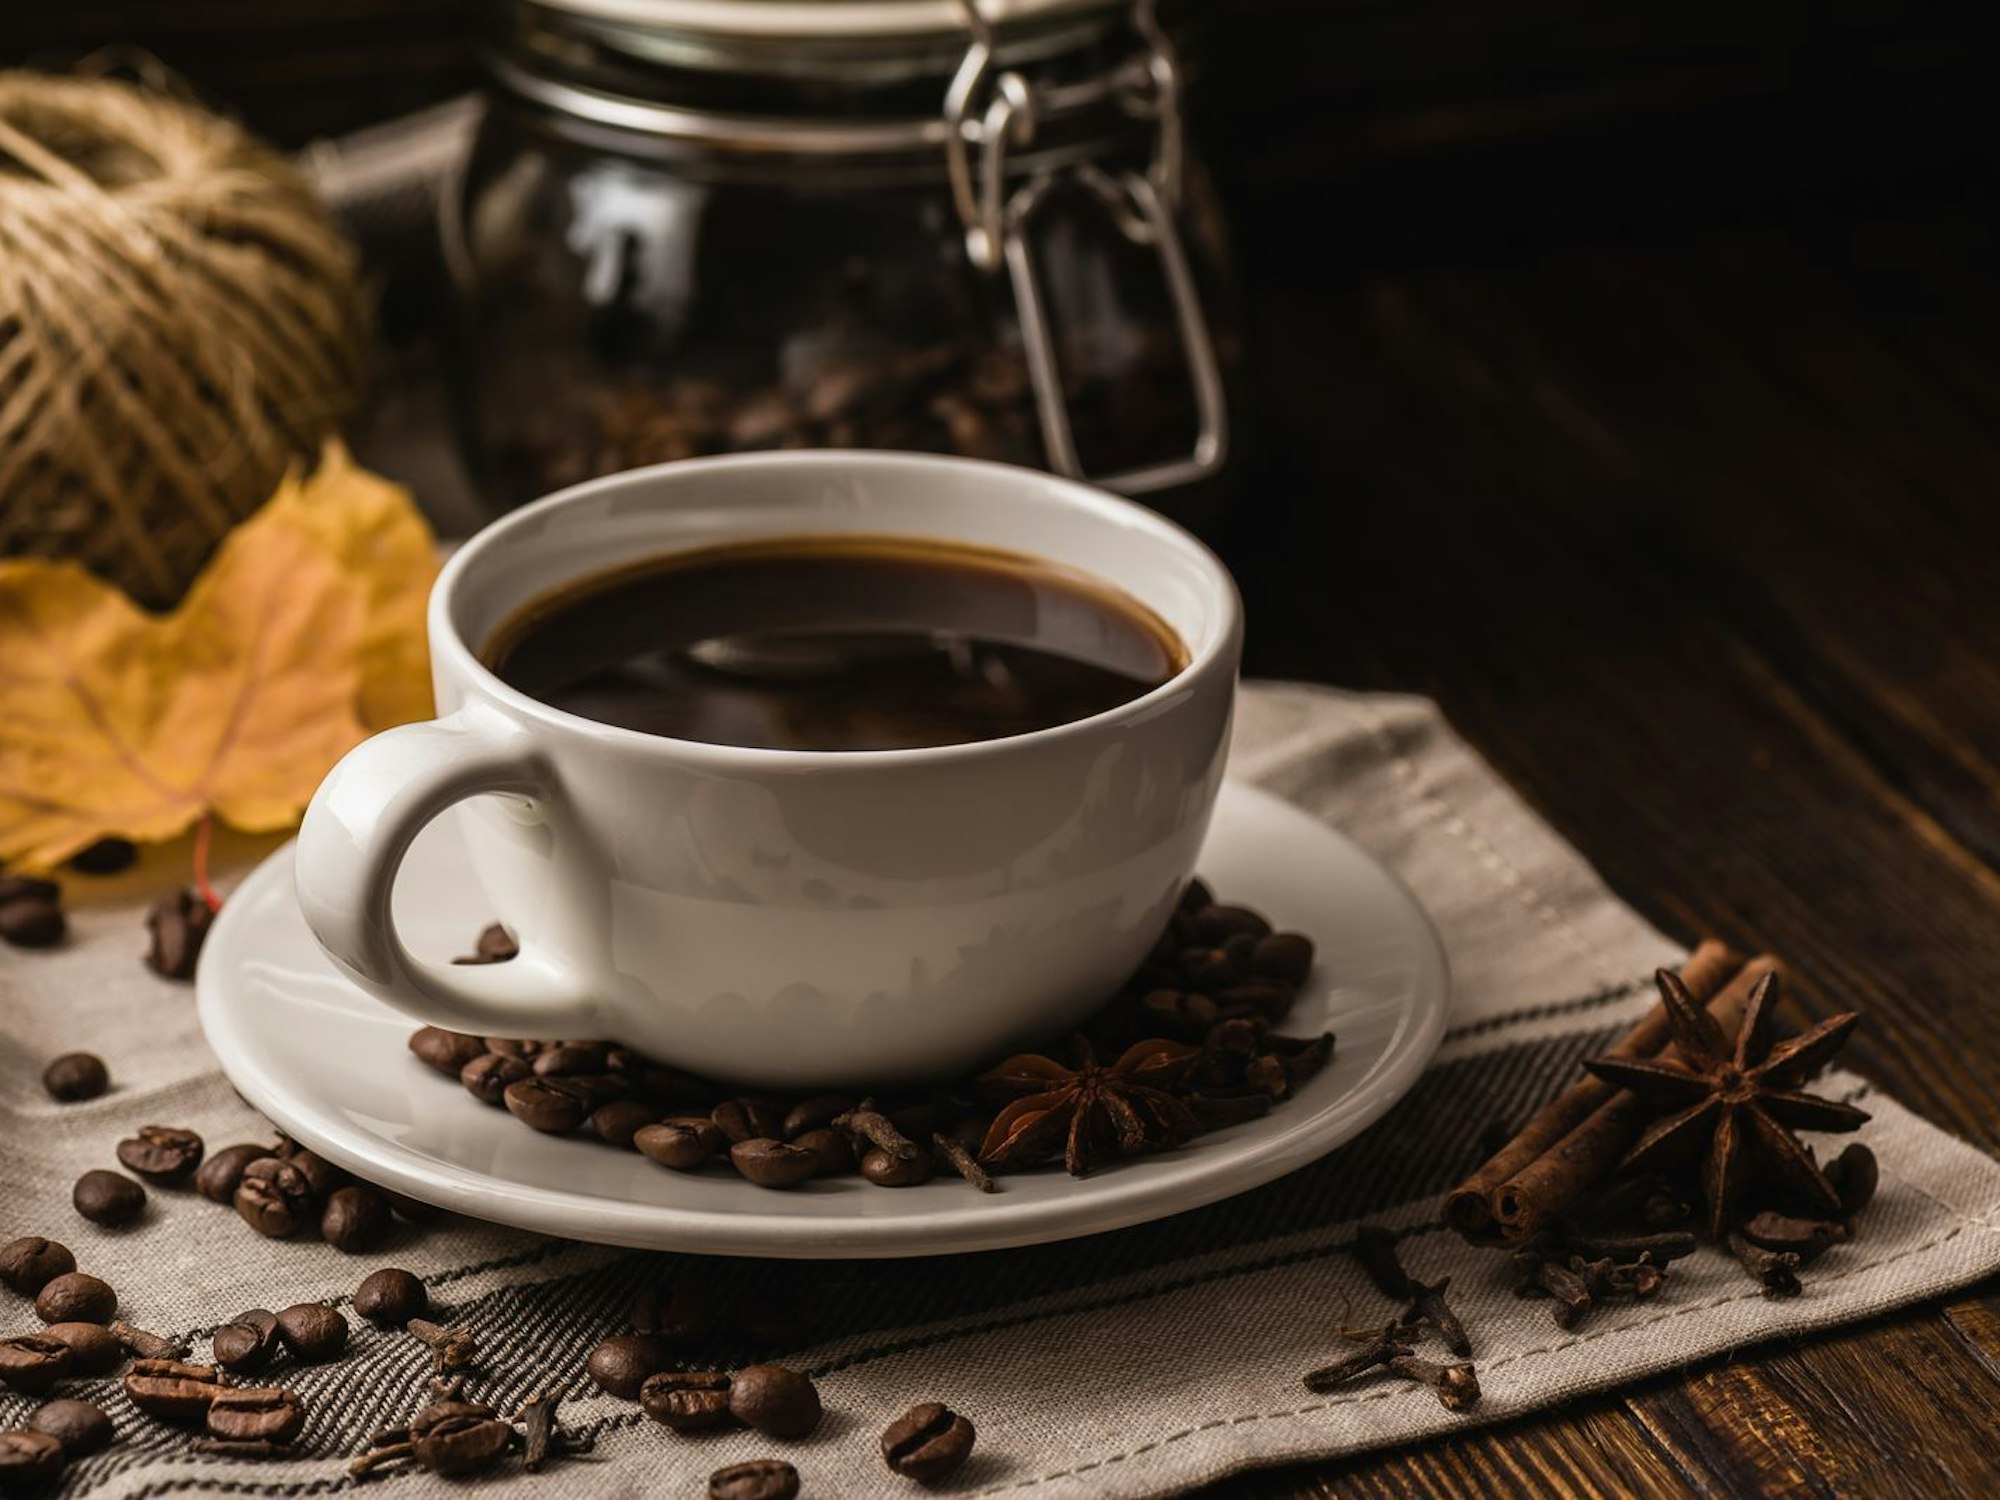 Ein Kaffee von Aldi Nord wurde zurückgerufen. Das Symbolbild zeigt eine Tasse mit schwarzem Kaffee und steht nicht in Zusammenhang mit dem Rückruf.